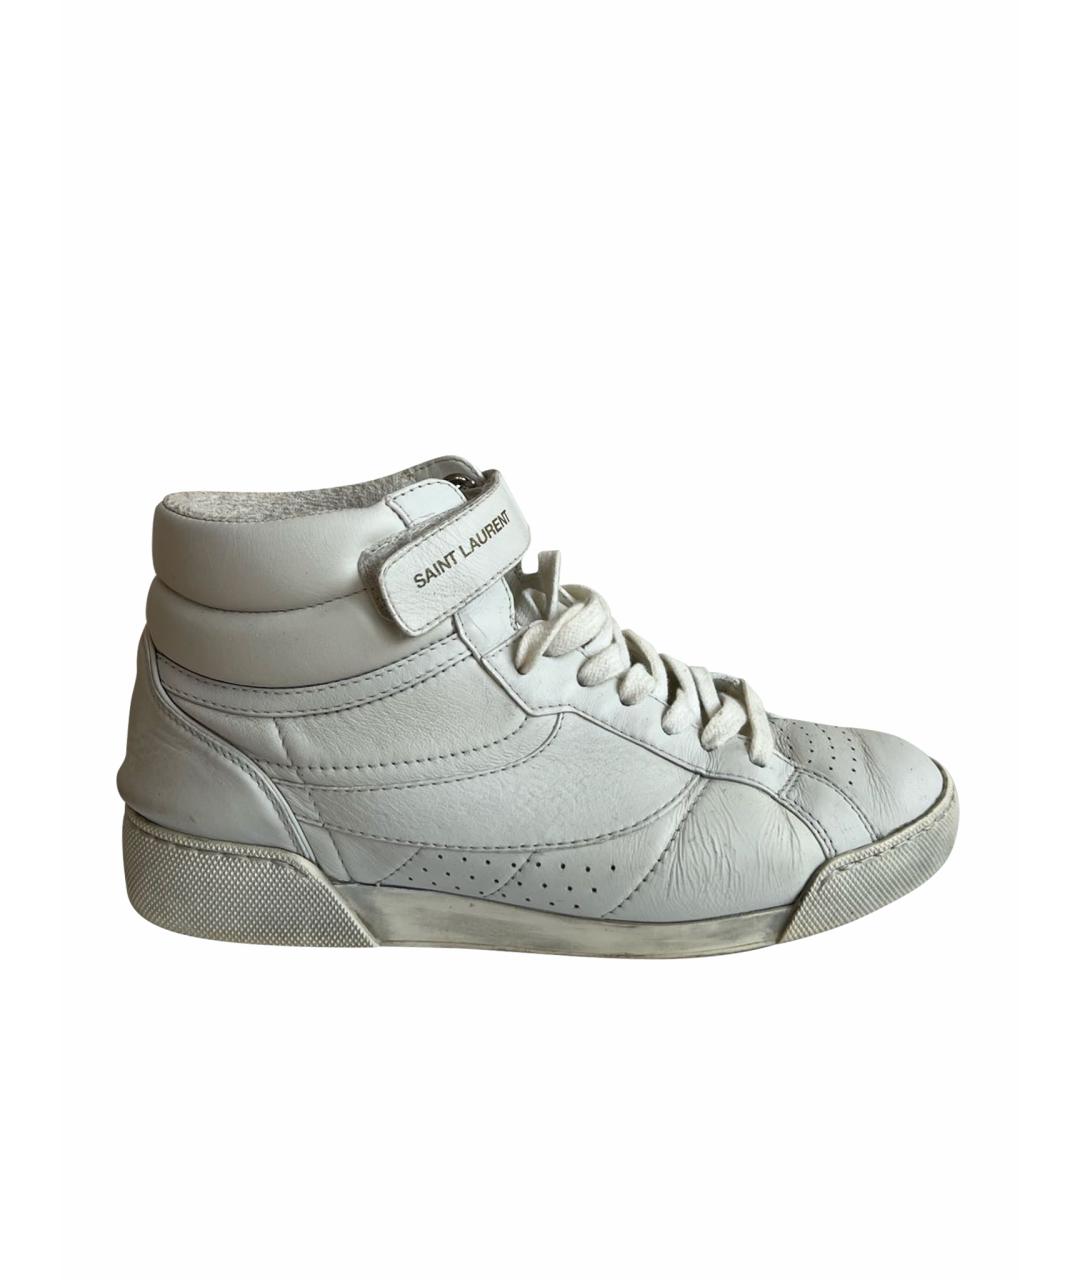 SAINT LAURENT Белые кожаные кроссовки, фото 1